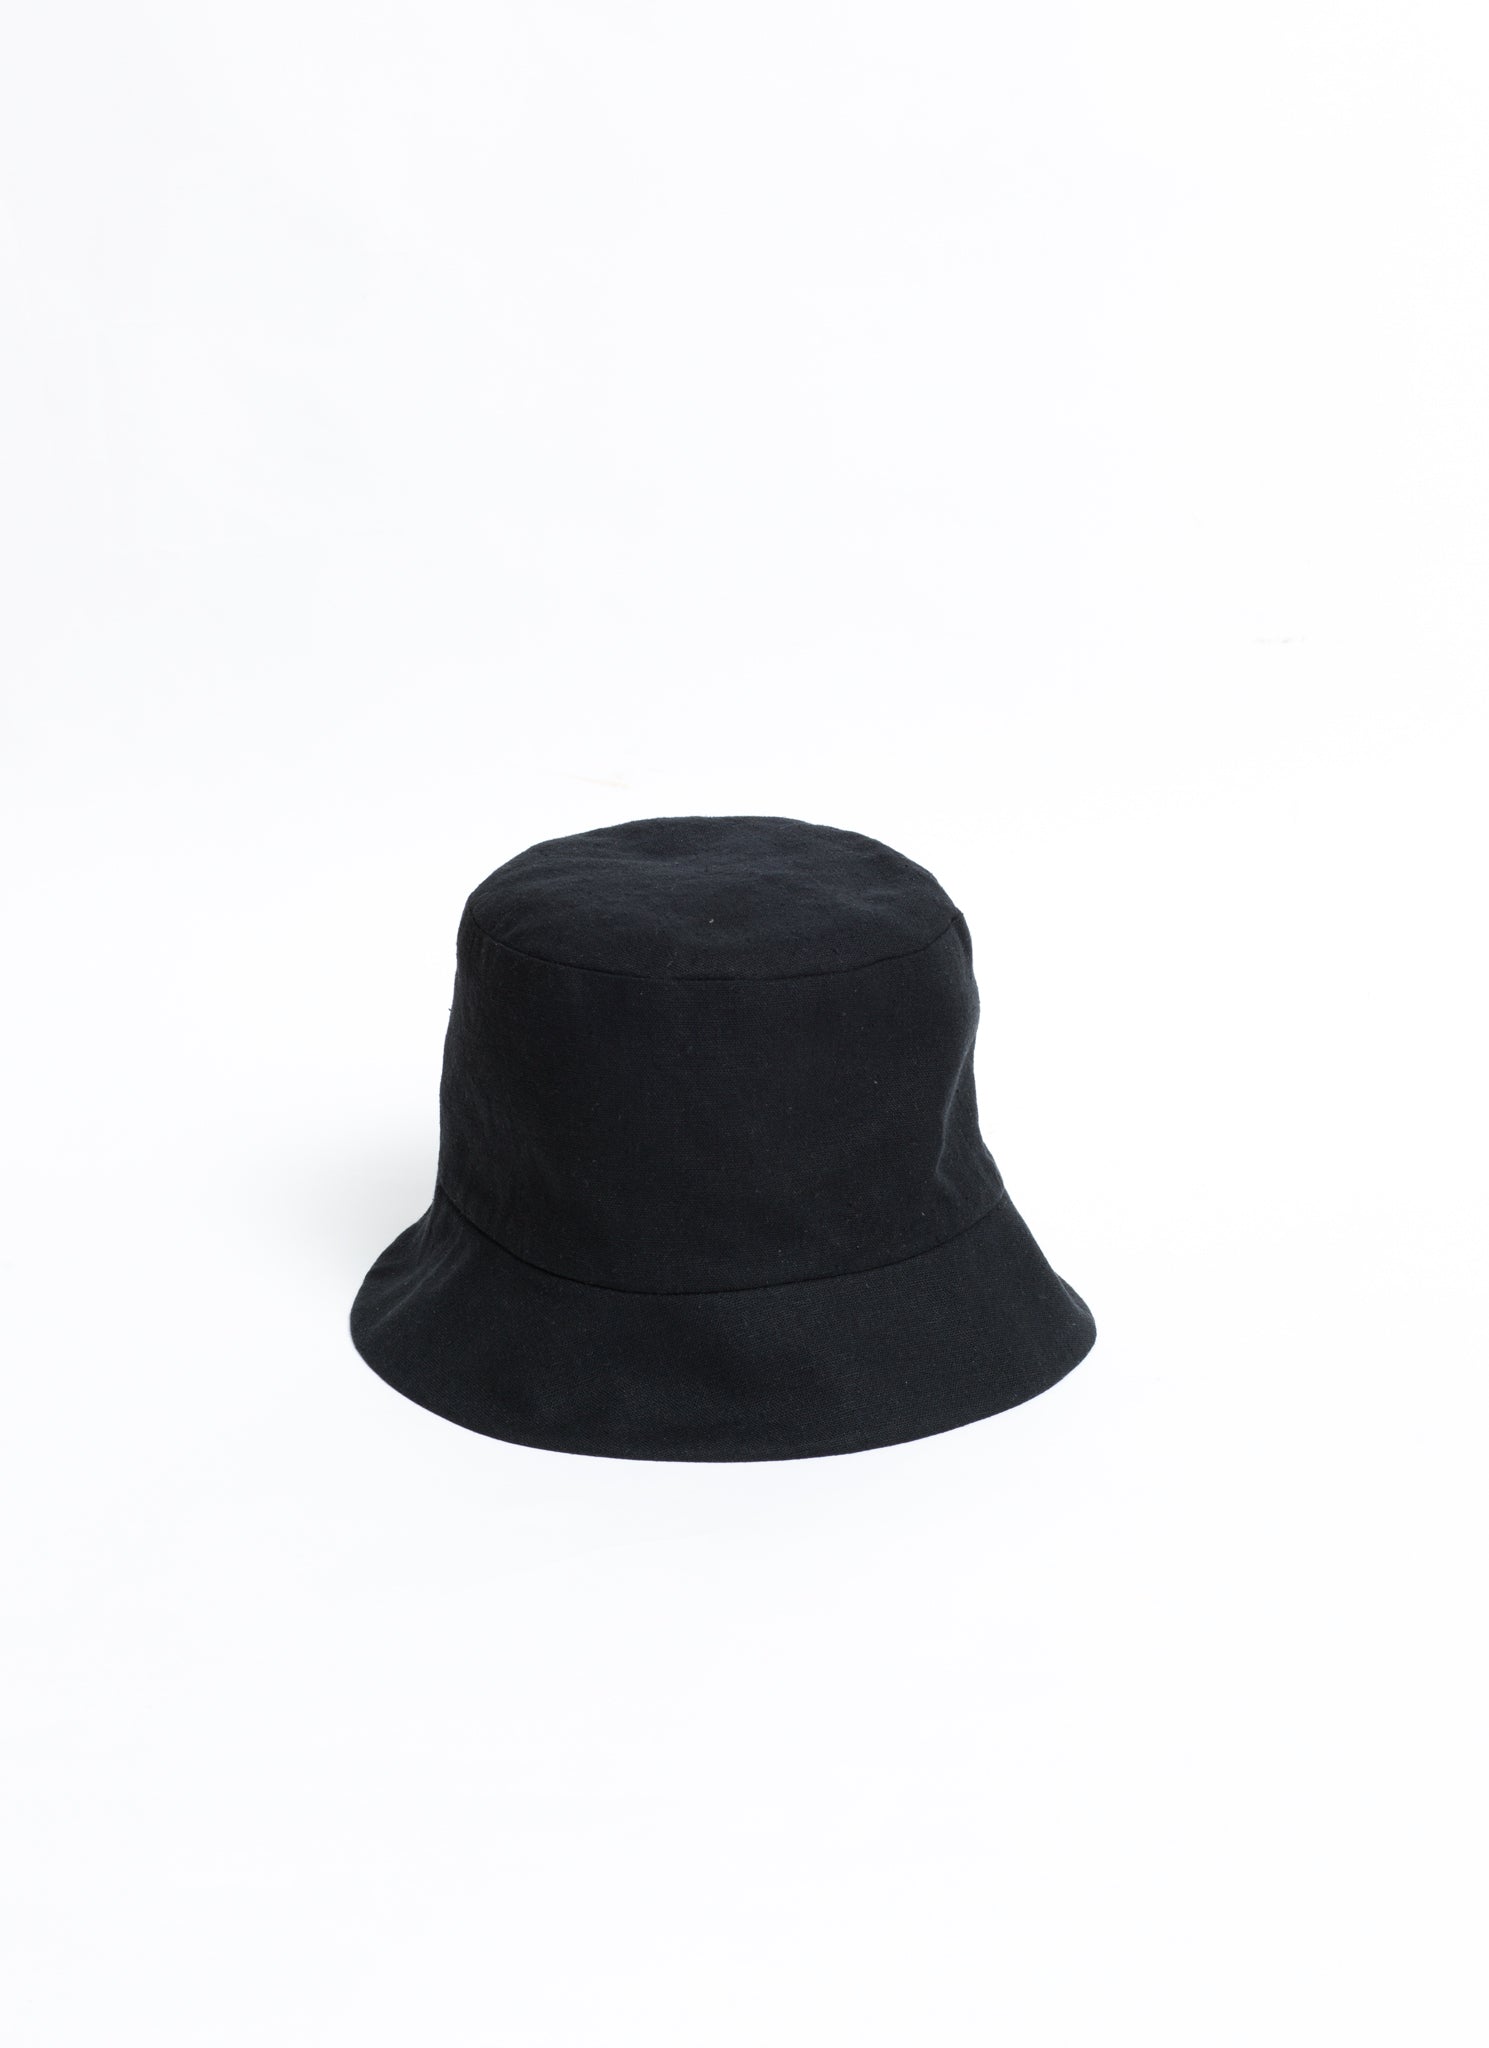 KAAREM - ADULT Unisex Mushroom Bucket Hat - Black